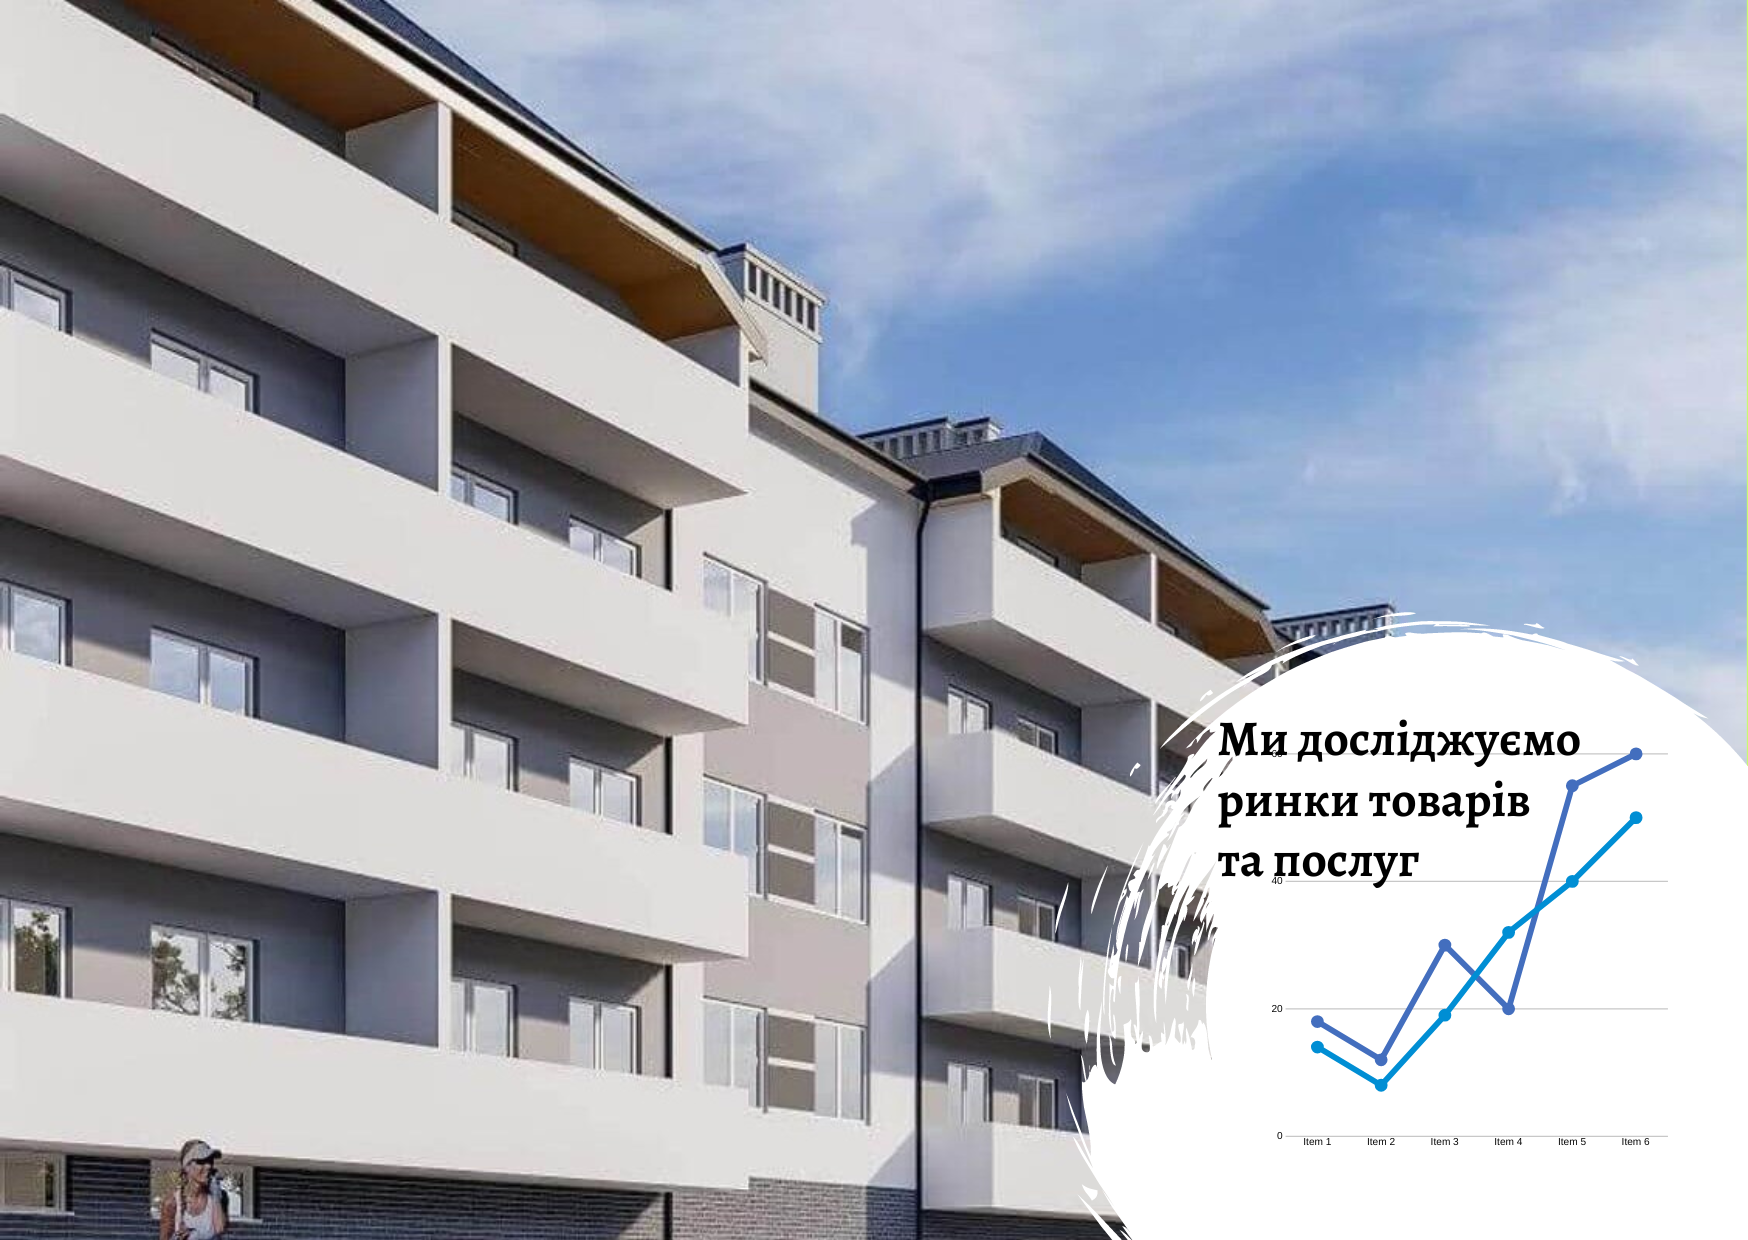 Оптимальное использование актива во Львове: жилая и офисная недвижимость